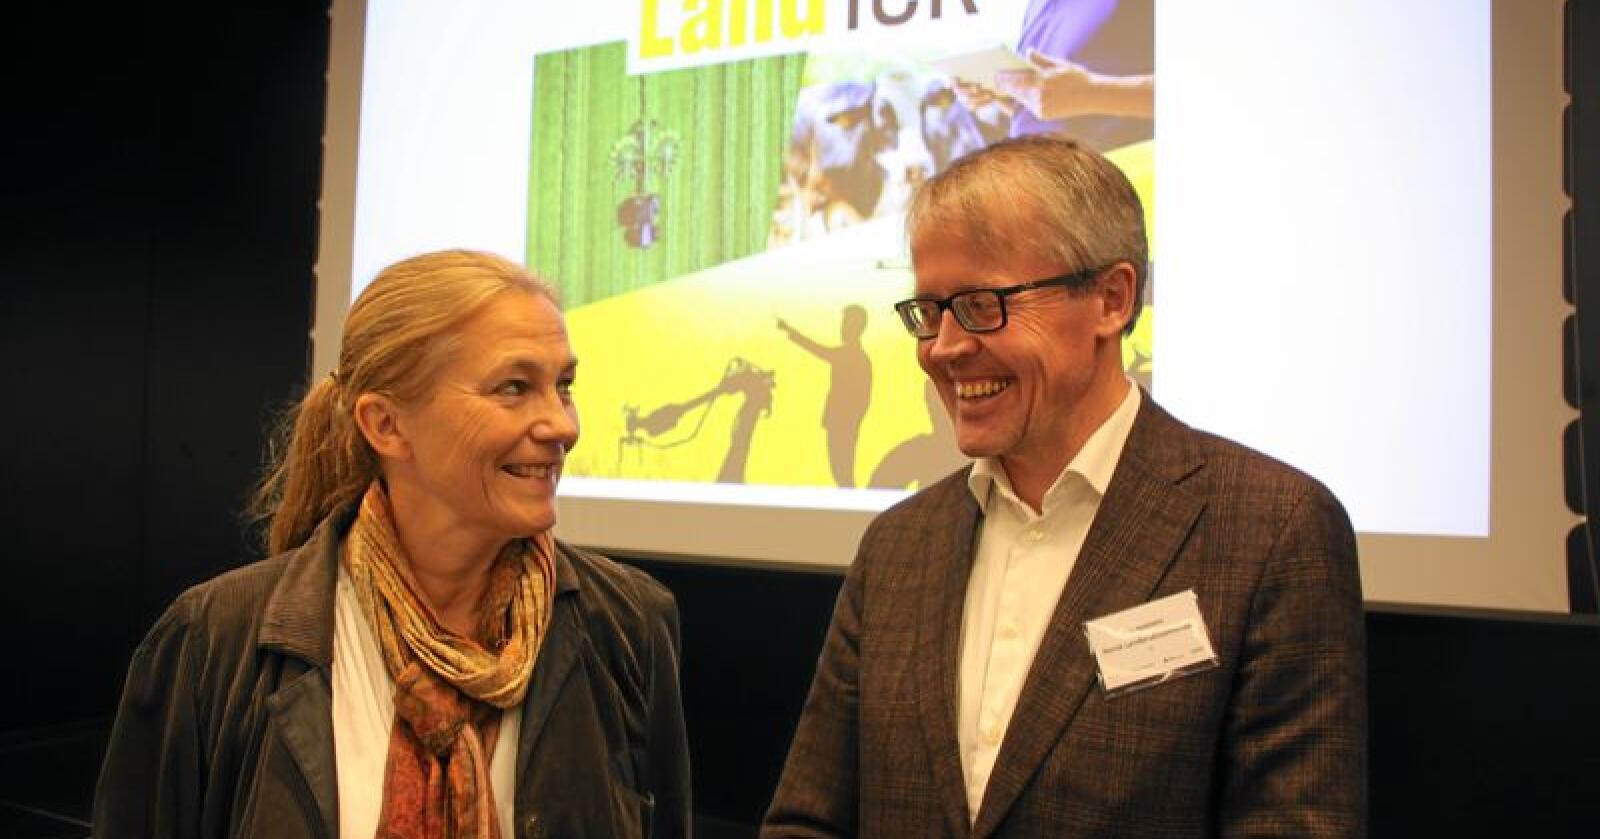 Alexandra Bech Gjørv, konsernsjef i Sintef og Ola Hedstein, administrerende direktør Norsk Landbrukssamvirke har tro på at teknologiutvikling i landbruket kan være positivt for hele samfunnet. Foto: Andrea Sofie Aasvang